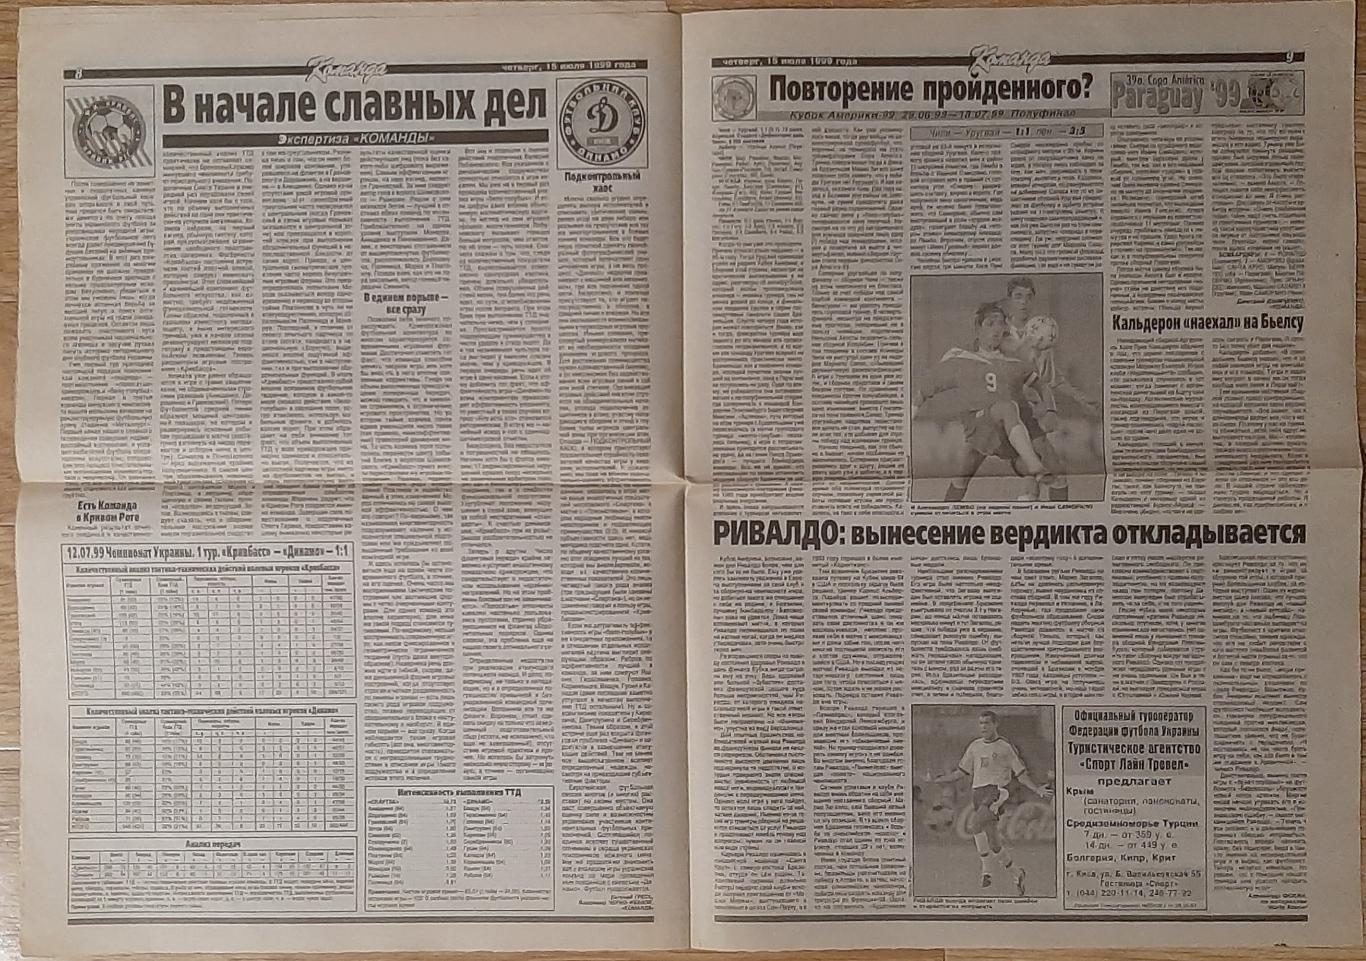 Команда #126 (15.07.1999) Рекорди чемпіонатів України 1992 - 1998/99 статистика 4